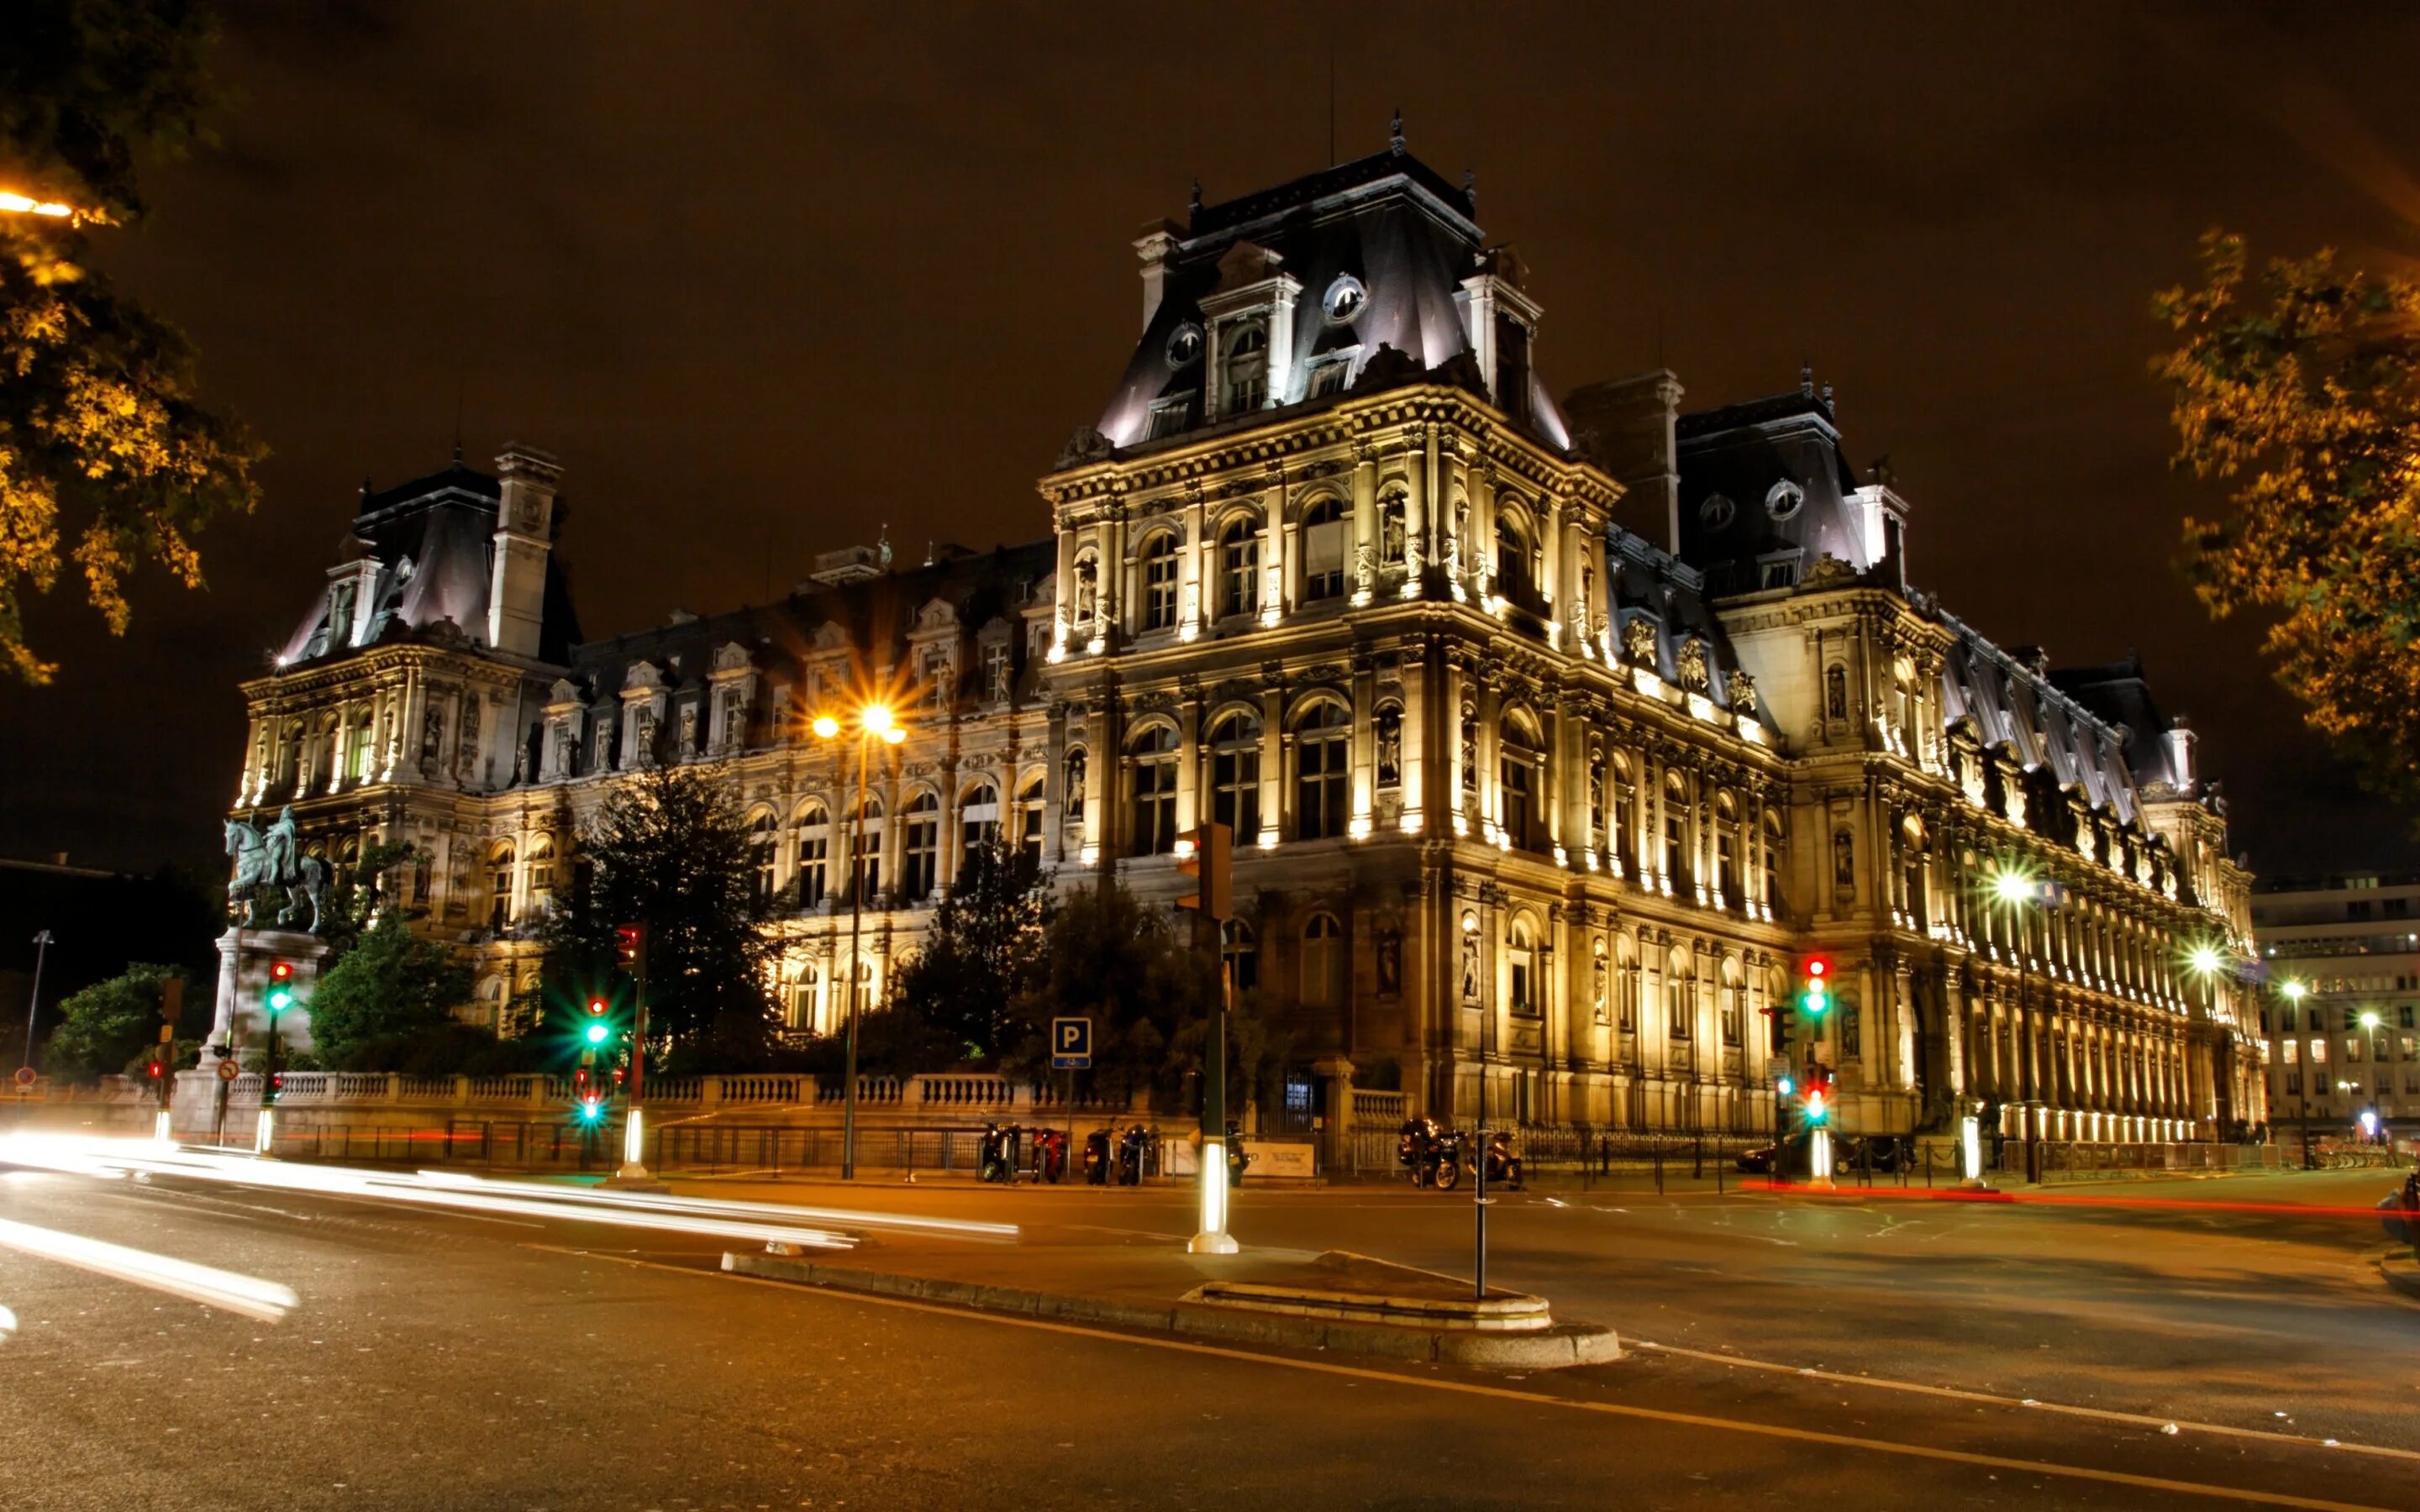 Фото зданий в городе. Хаусмана Билдинг Париж. Ночной Париж архитектура. Красивые здания. Ночные улицы Парижа.